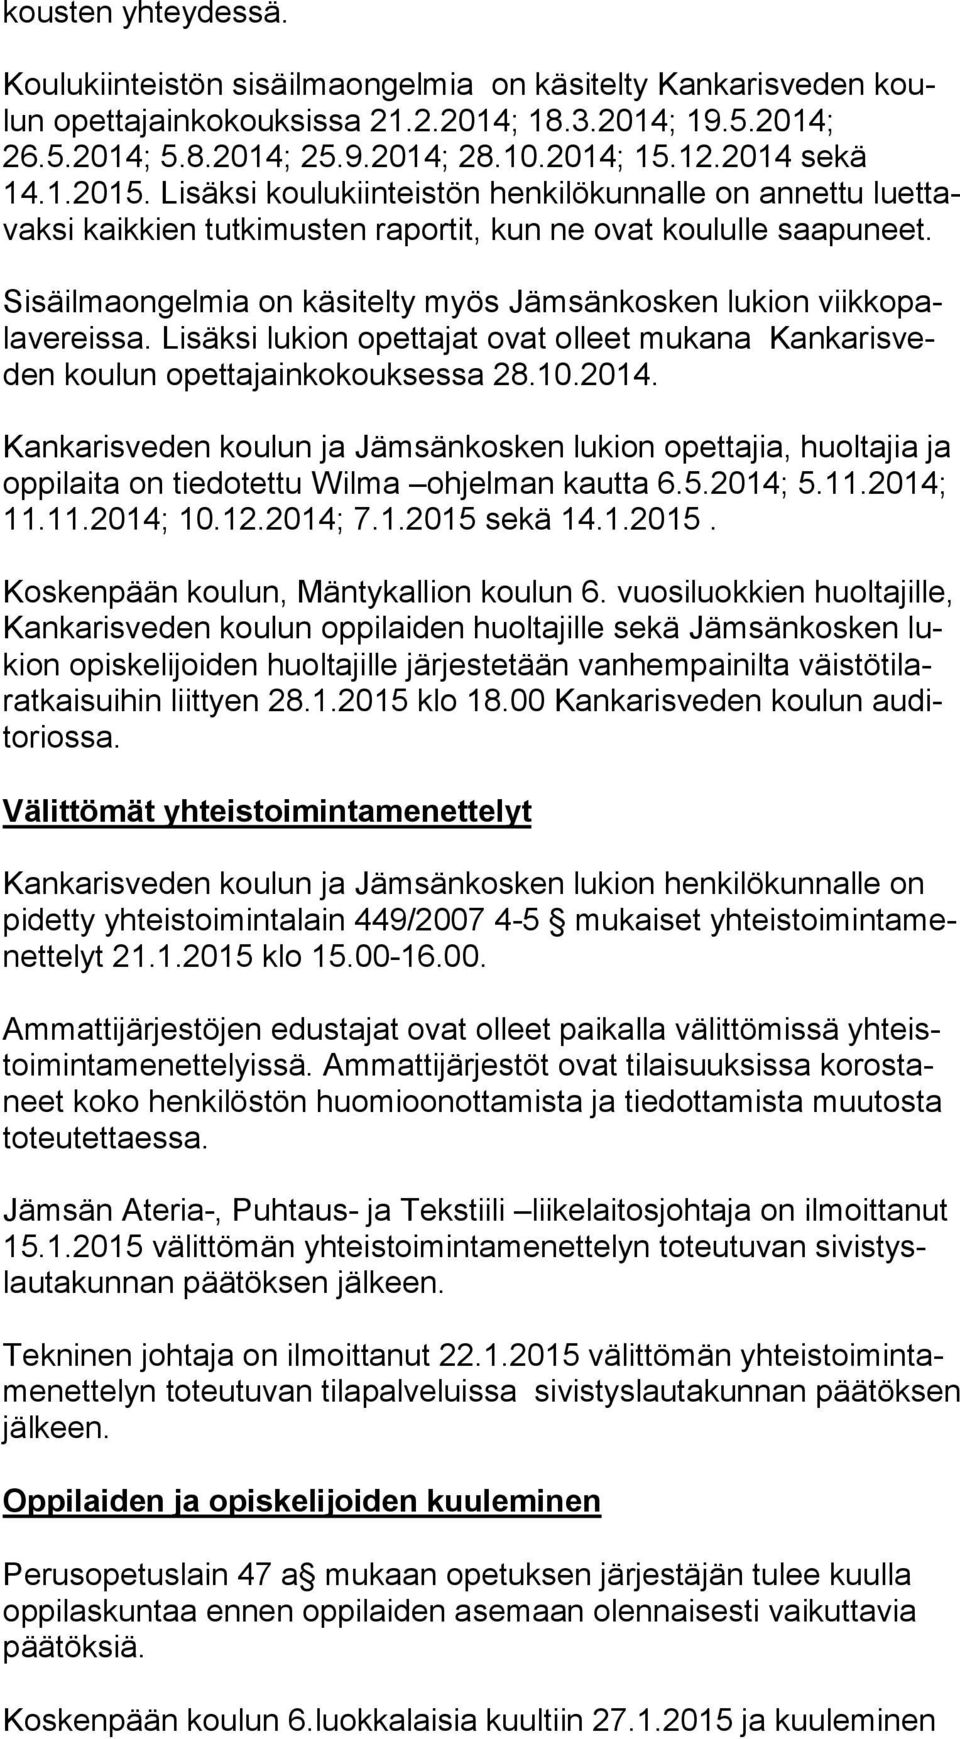 Sisäilmaongelmia on käsitelty myös Jämsänkosken lukion viik ko pala ve reis sa. Lisäksi lukion opettajat ovat olleet mukana Kan ka ris veden koulun opettajainkokouksessa 28.10.2014.